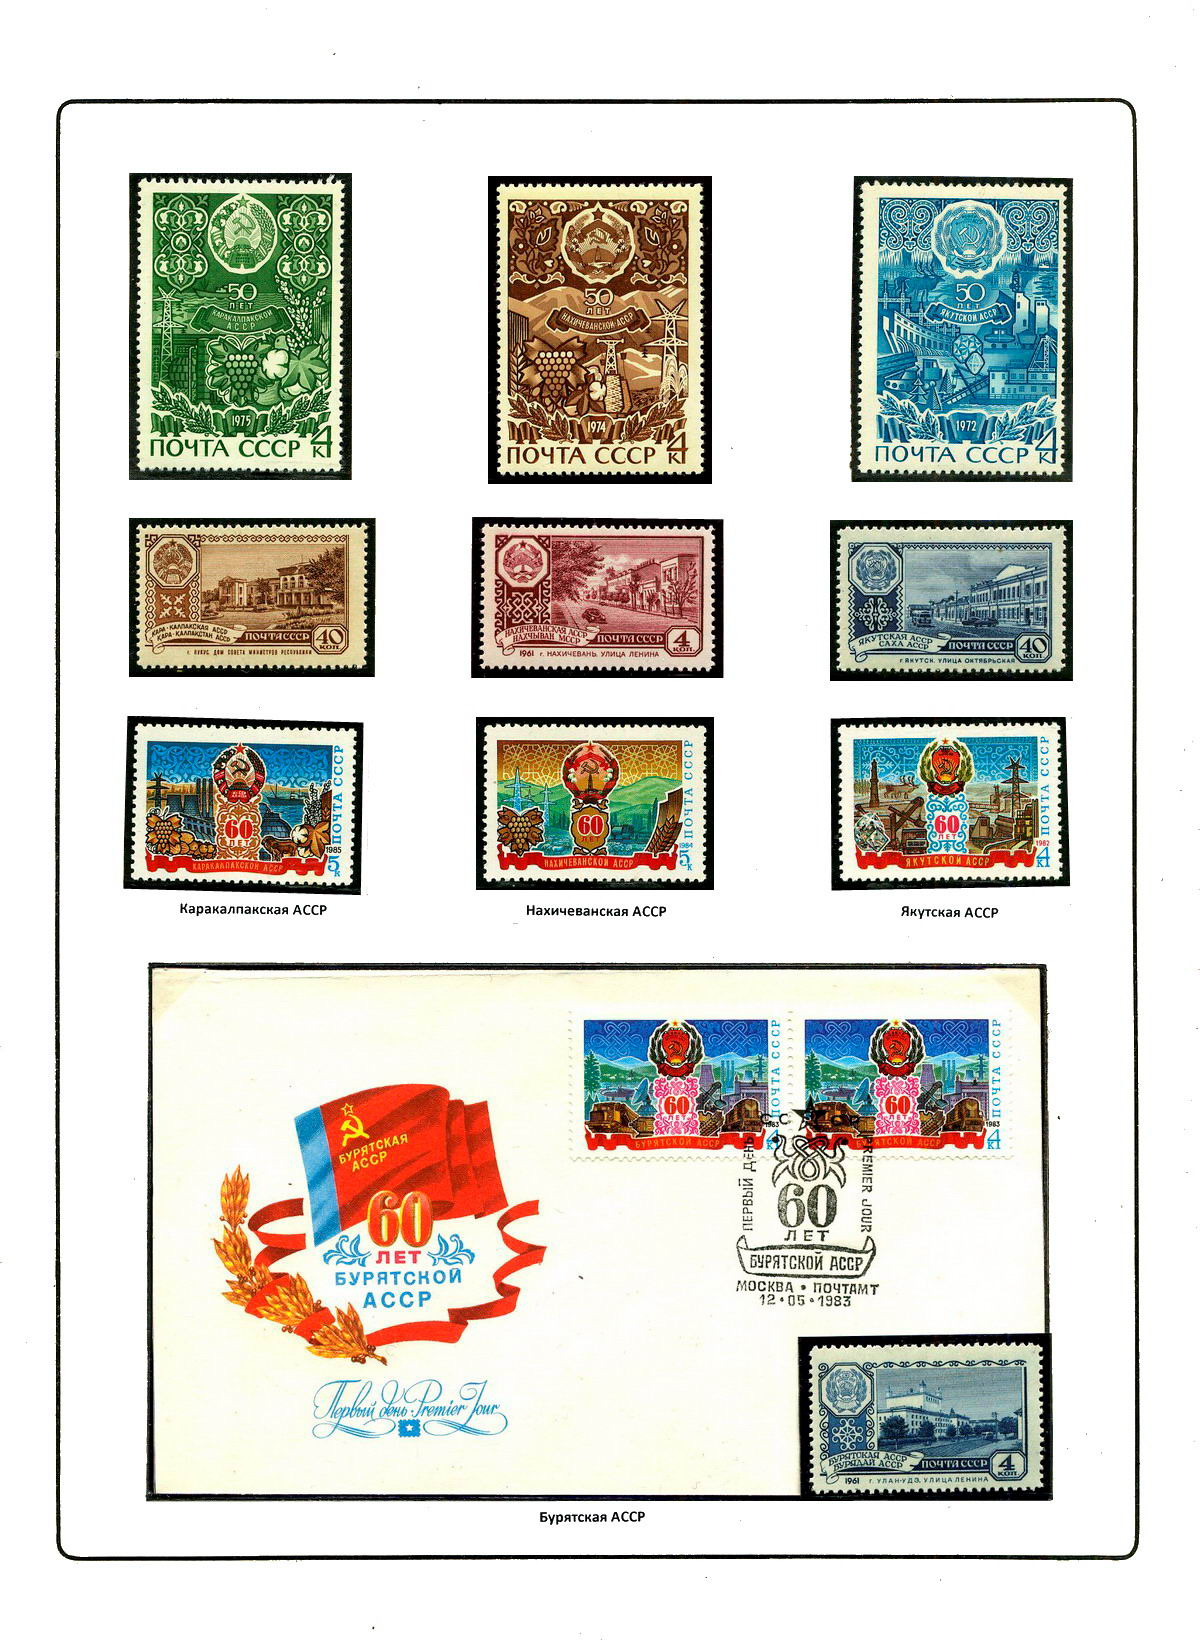 Гербы стран и городов на почтовых марках Уэльс Монмуншир  Геральдика в филателии